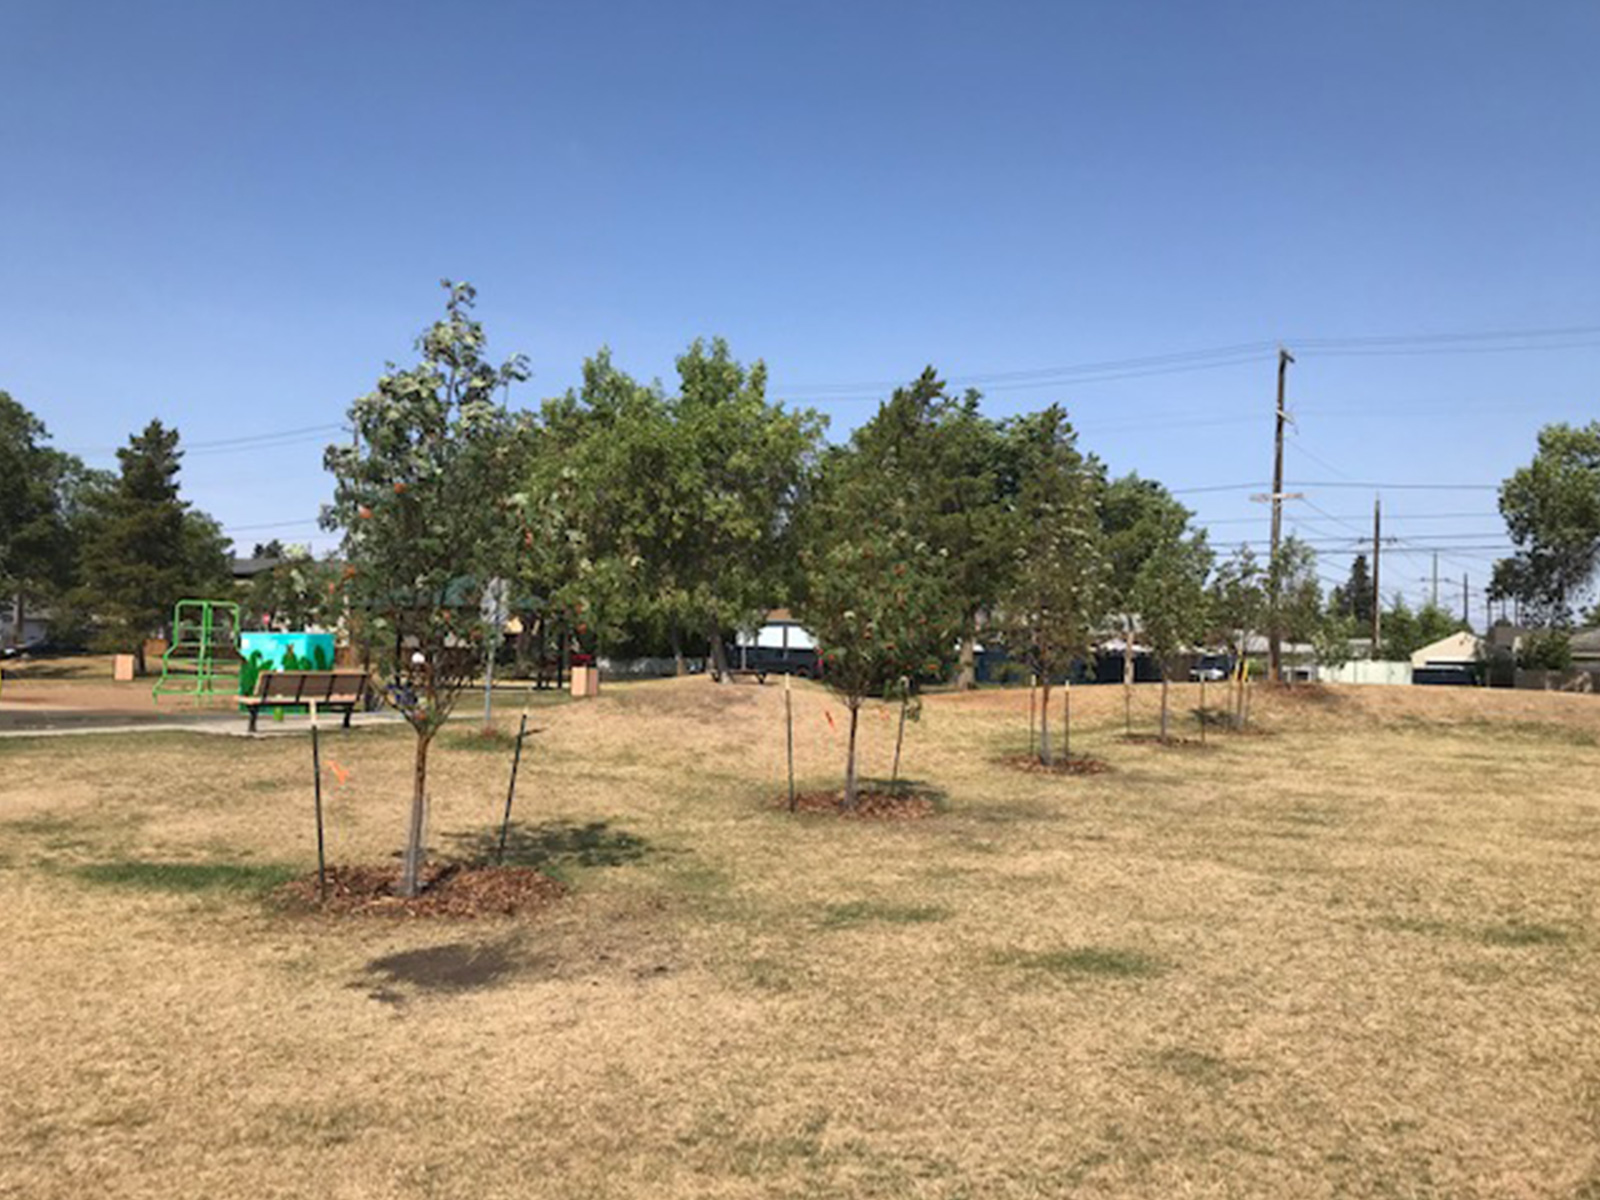 New Playground trees at Zoie Gardiner Park